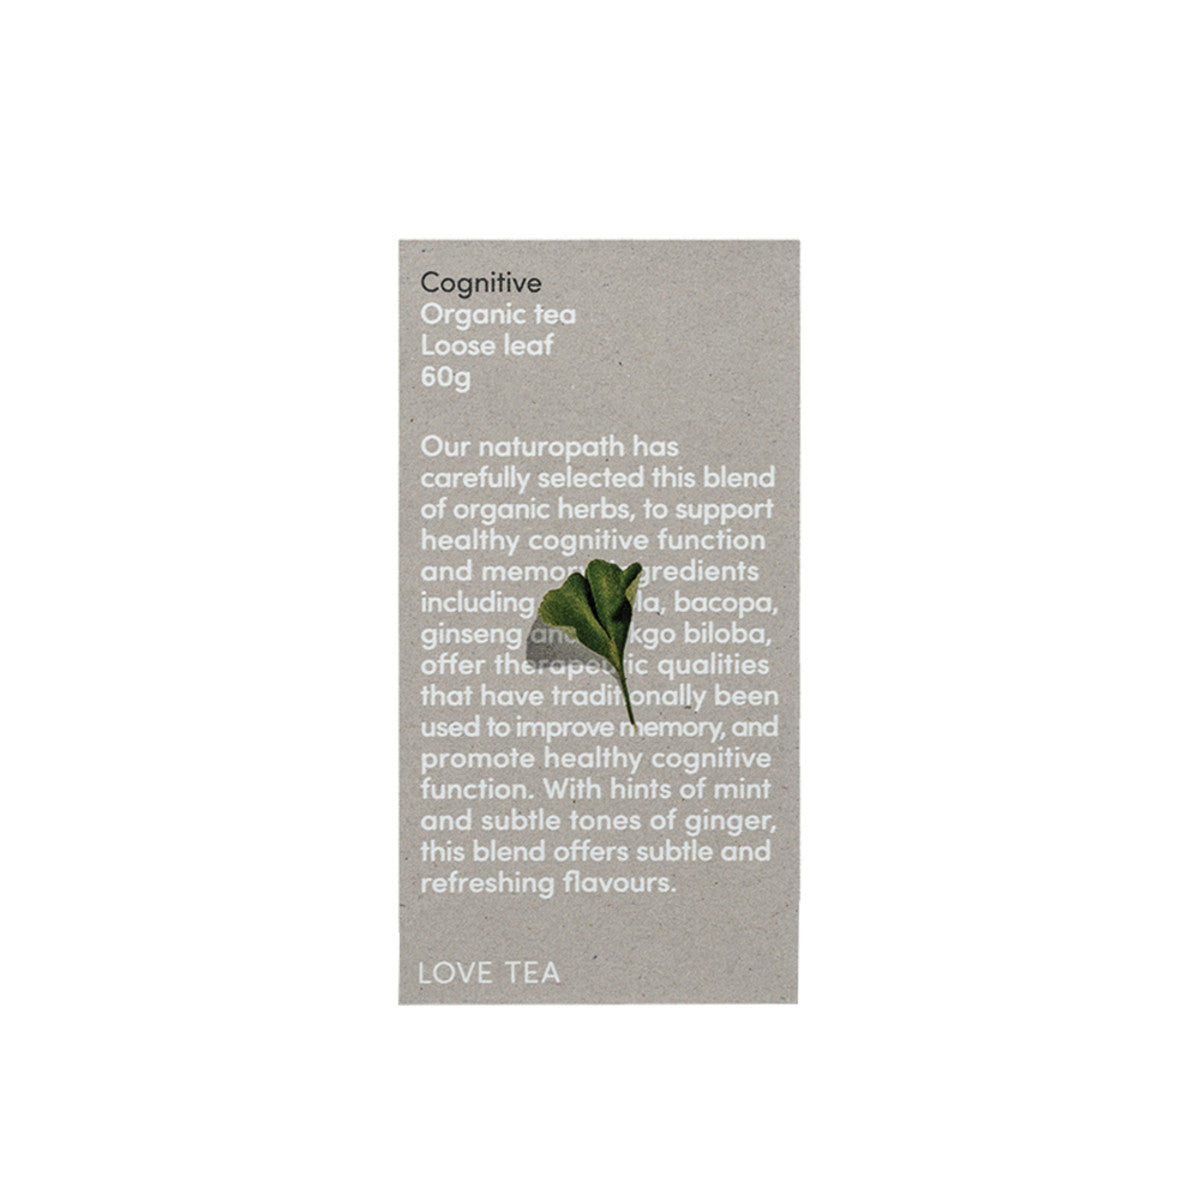 Love Tea - Organic Cognitive Loose Leaf